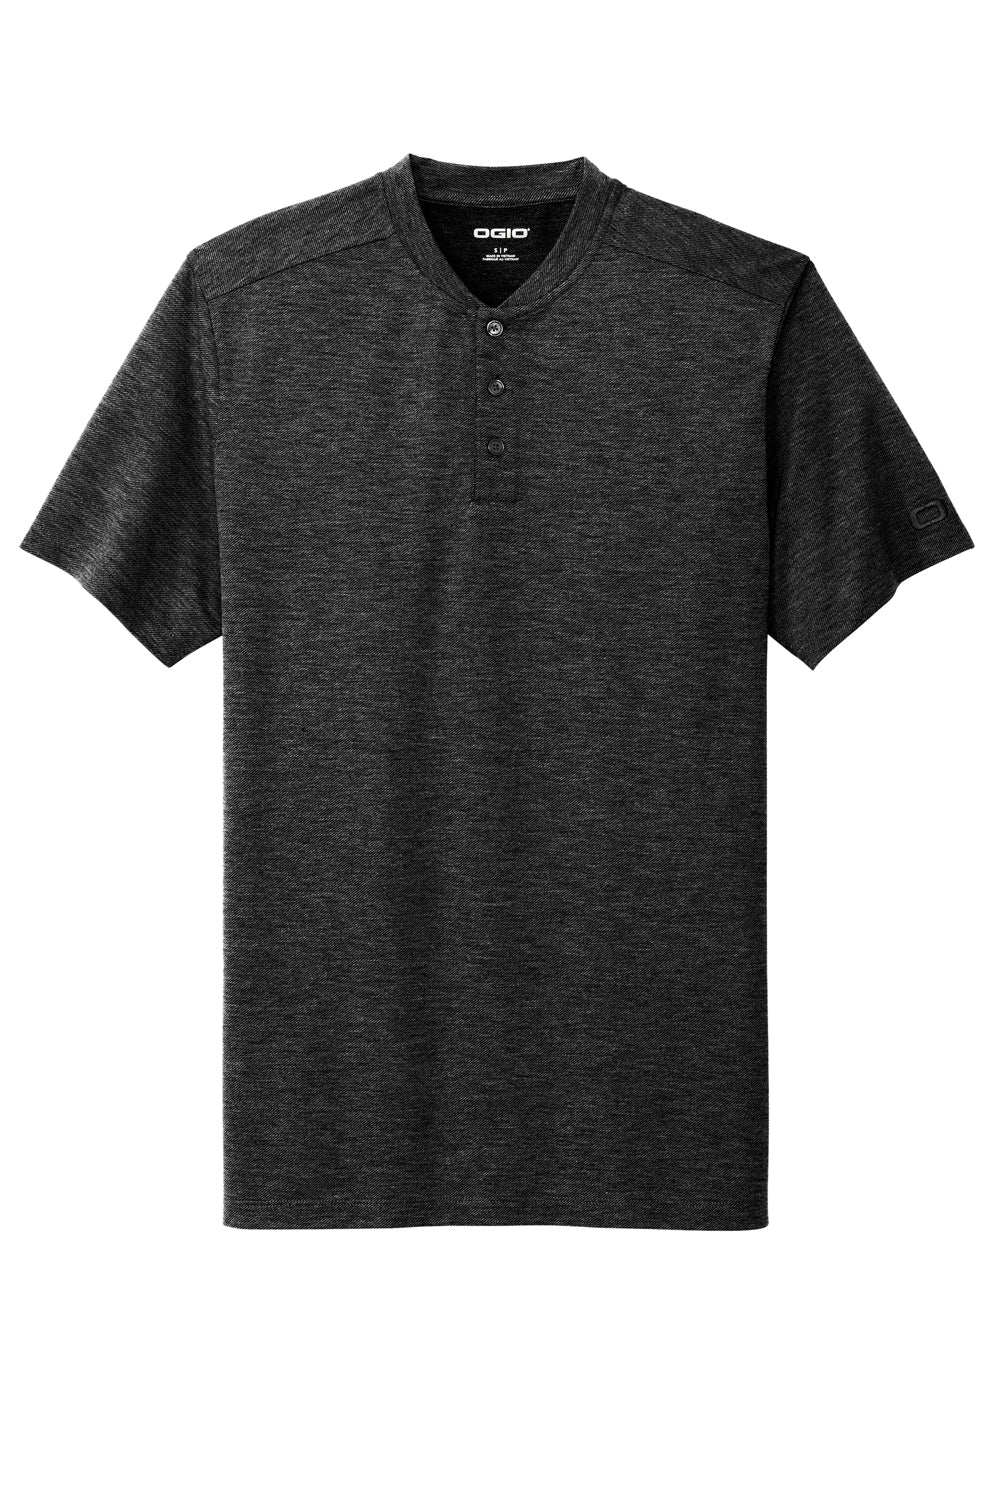 Ogio OG148 Evolution Short Sleeve Henley T-Shirt Blacktop Flat Front